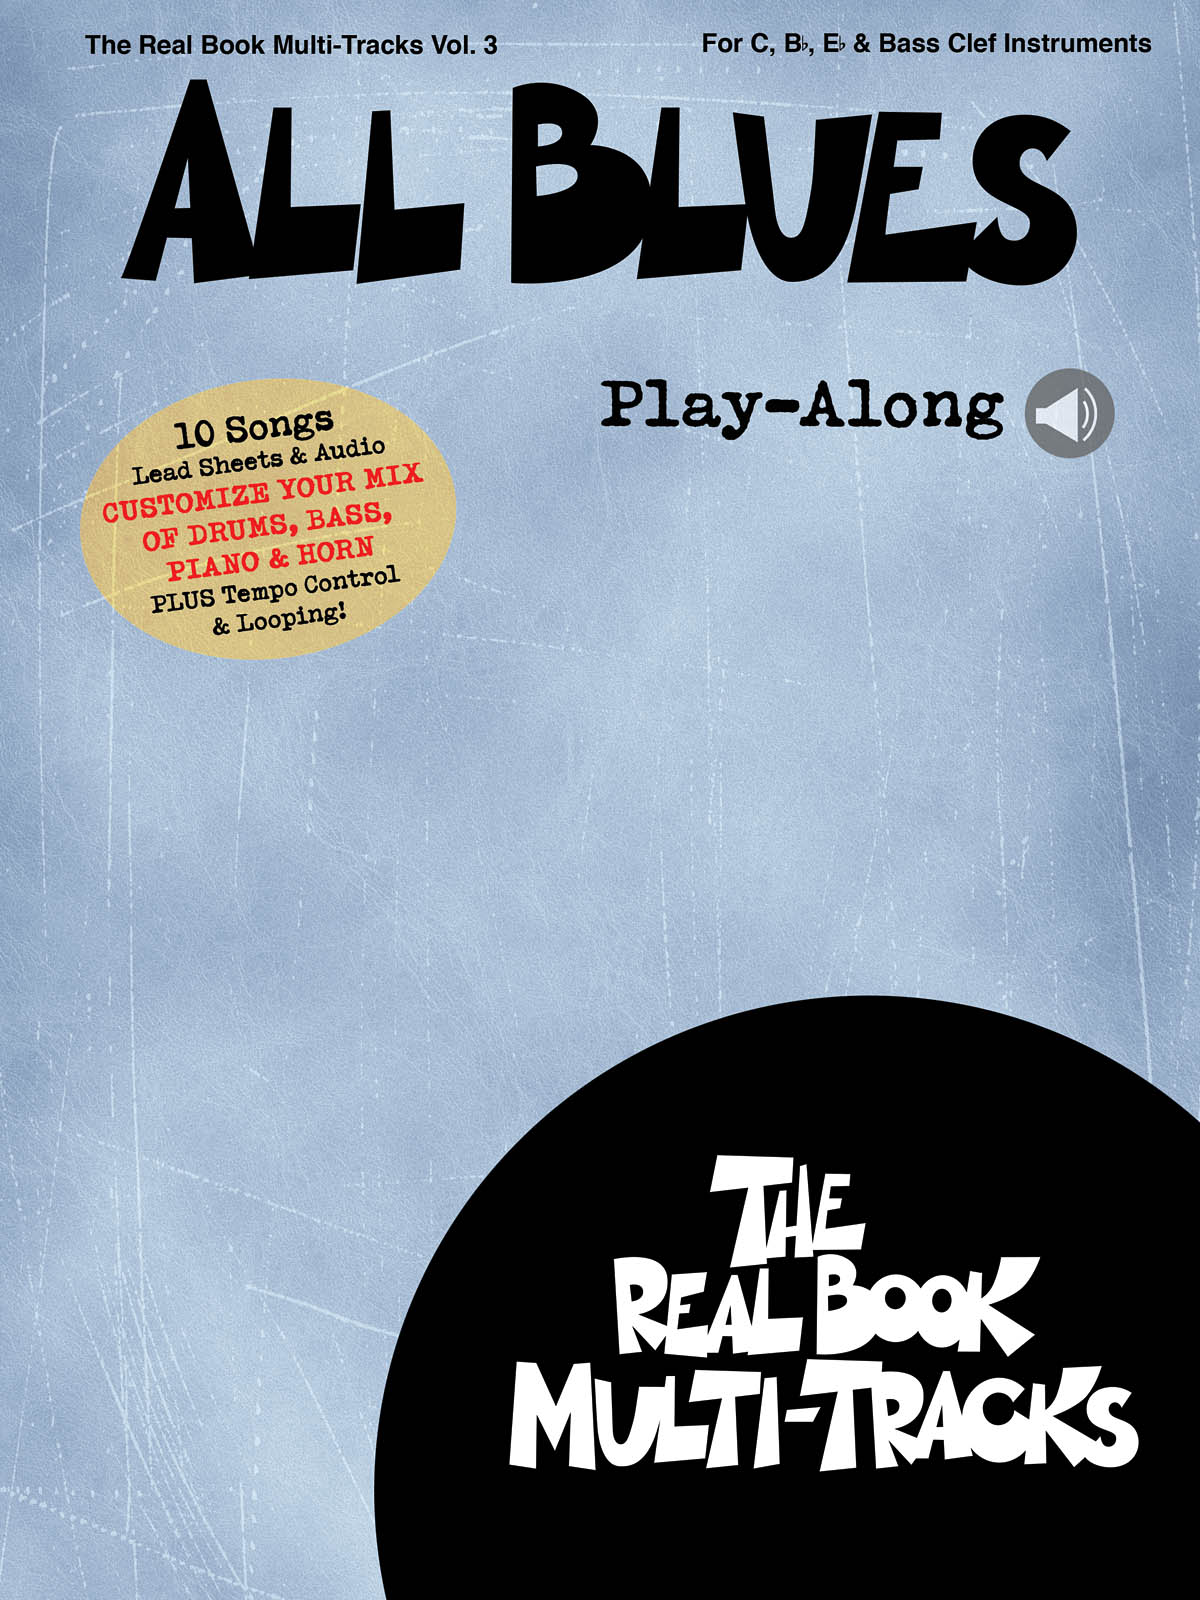 All Blues Play-Along - Real Book Multi-Tracks Volume 3 - skladby pro nástroje v ladění C, B, Es